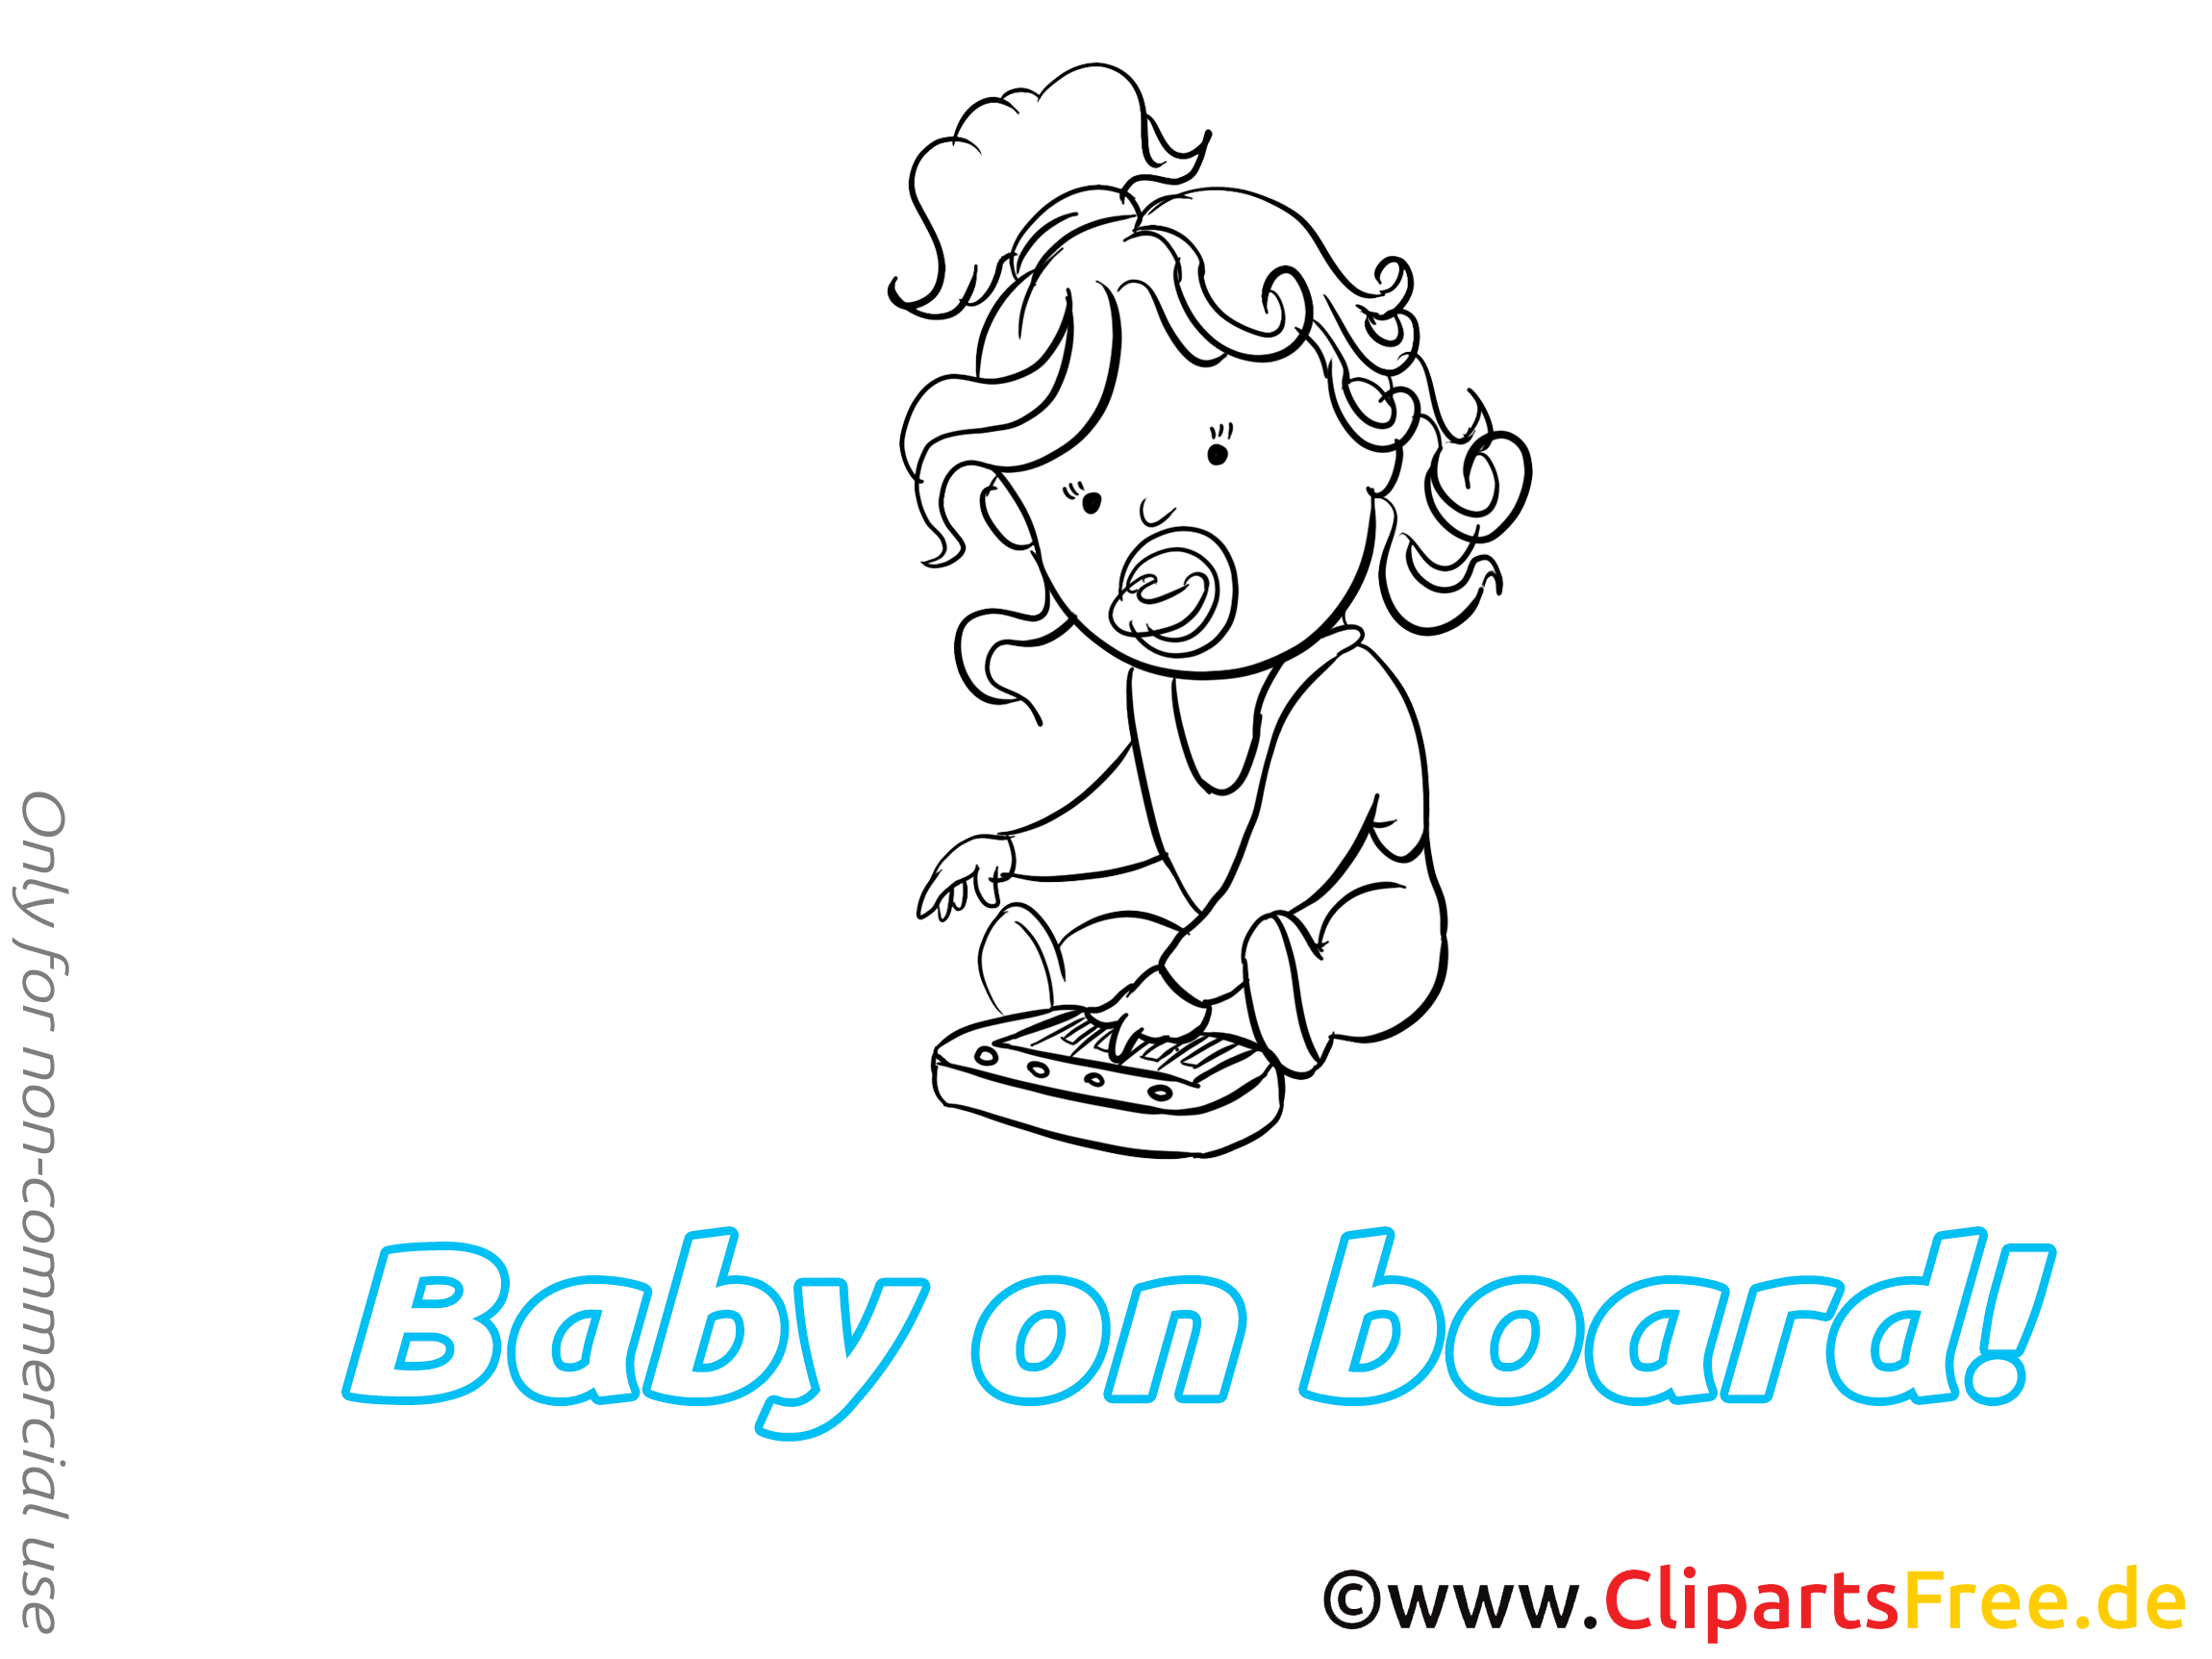 Piano image à colorier – Bébé à bord images cliparts